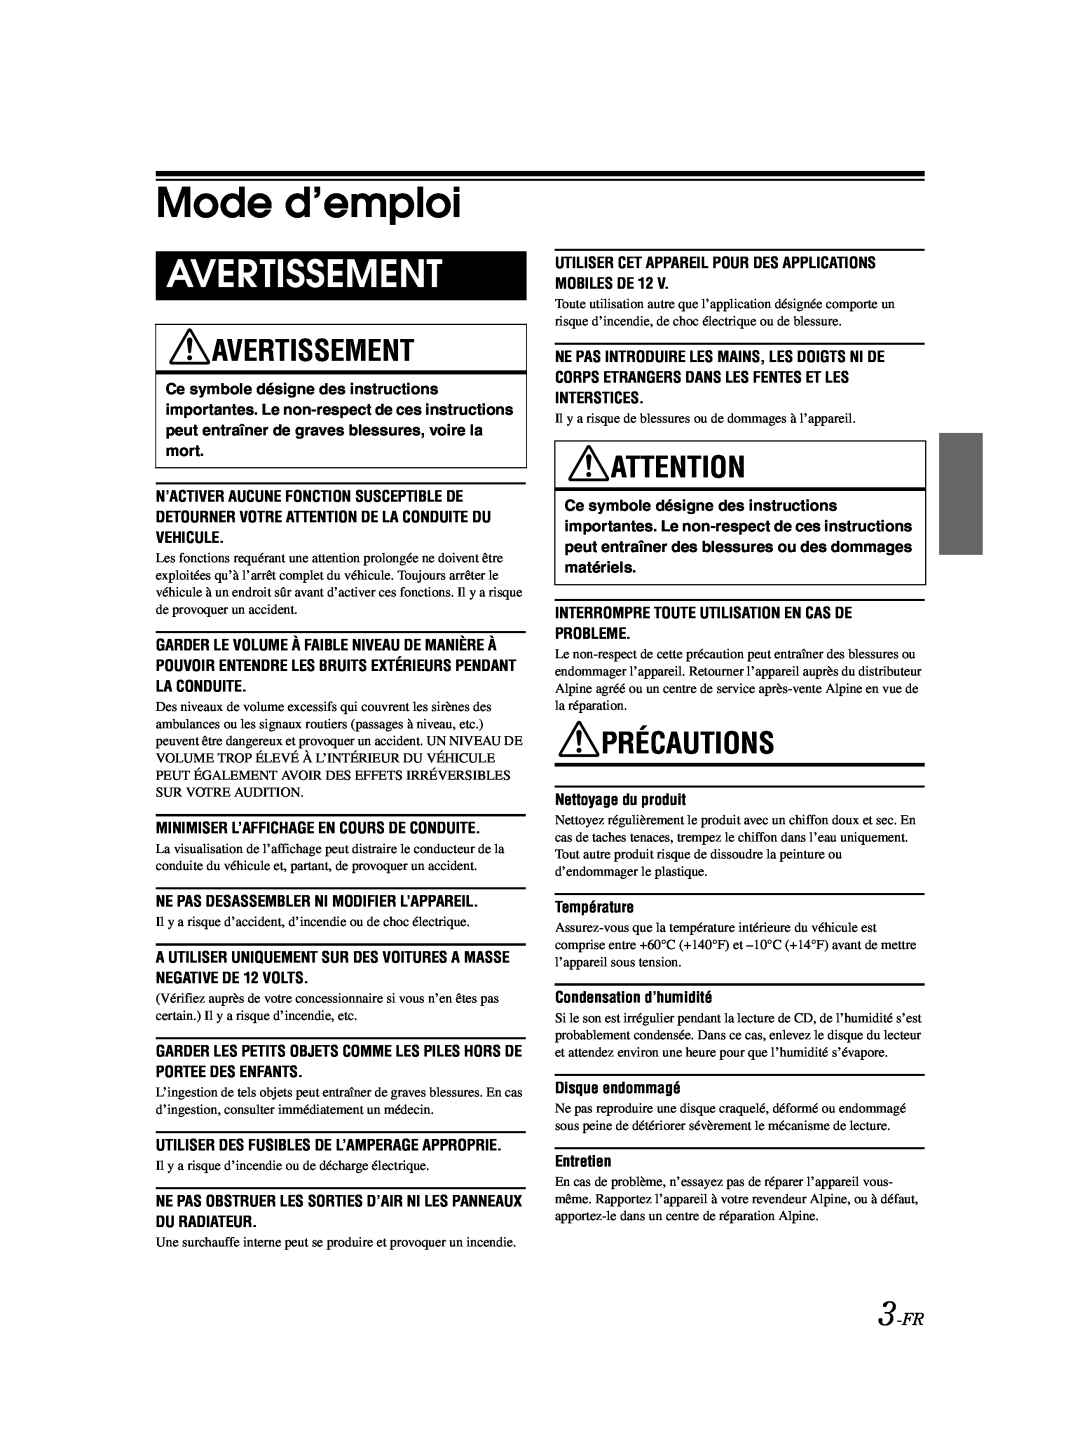 Alpine CDE-9870 owner manual Mode d’emploi, Avertissement, Précautions, 3-FR 